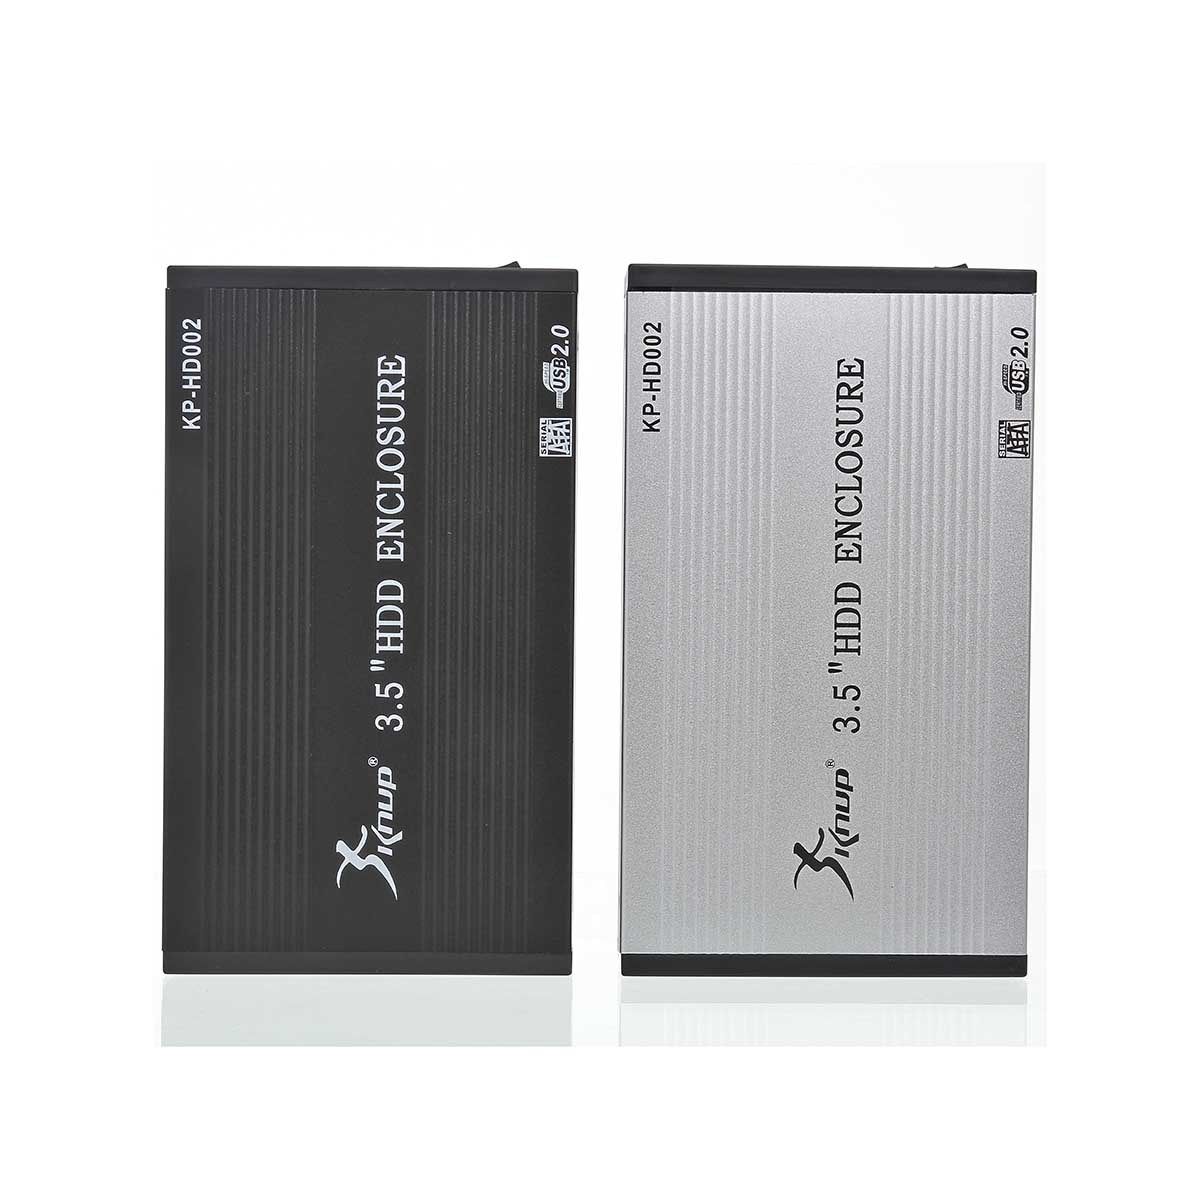 Case Para HD 3,5 USB 2.0 KP-HD002 - Mega Computadores